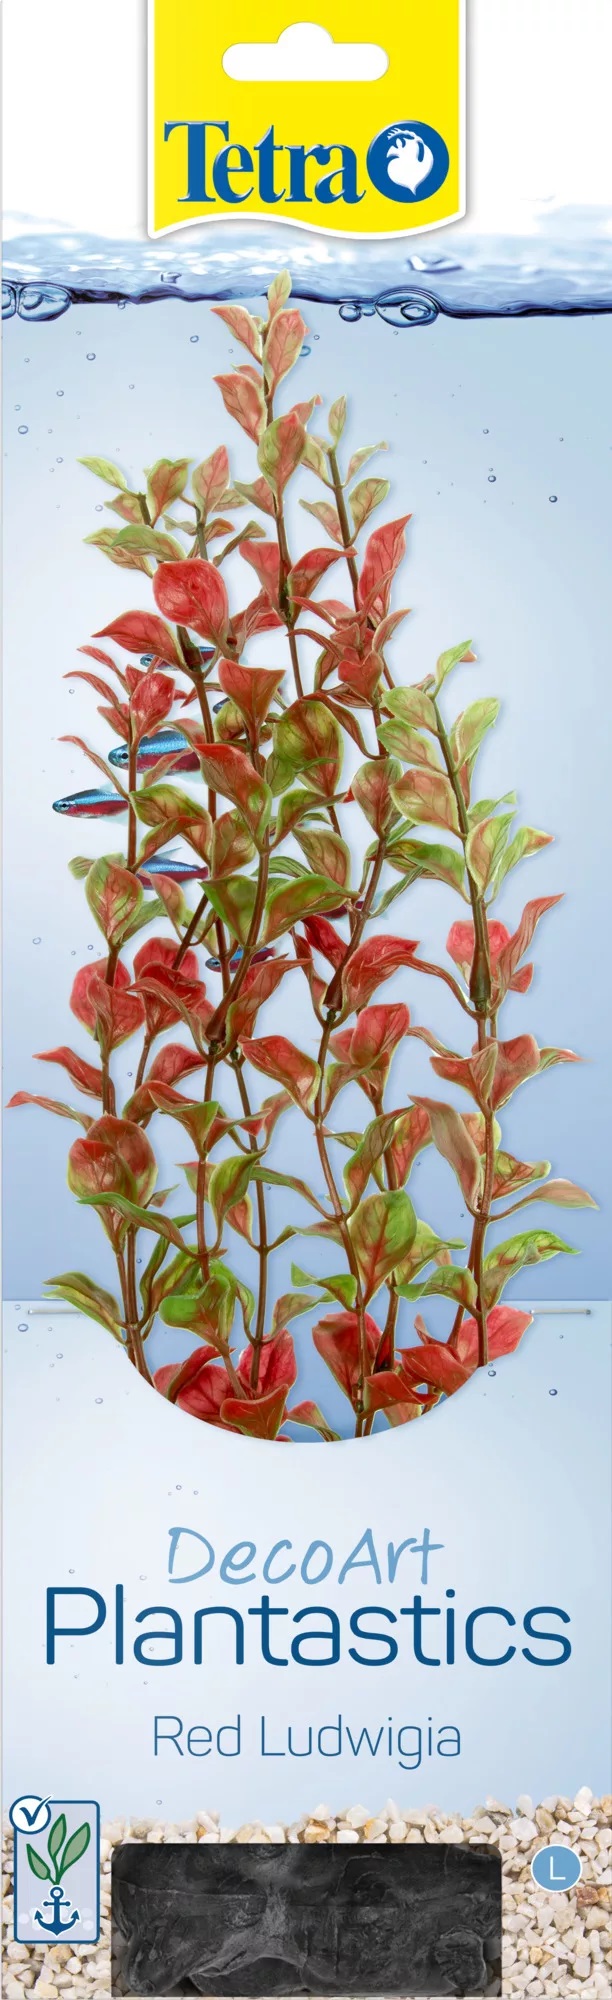 Растение искусственное Tetra deco art р.l 30см людвигия 28009